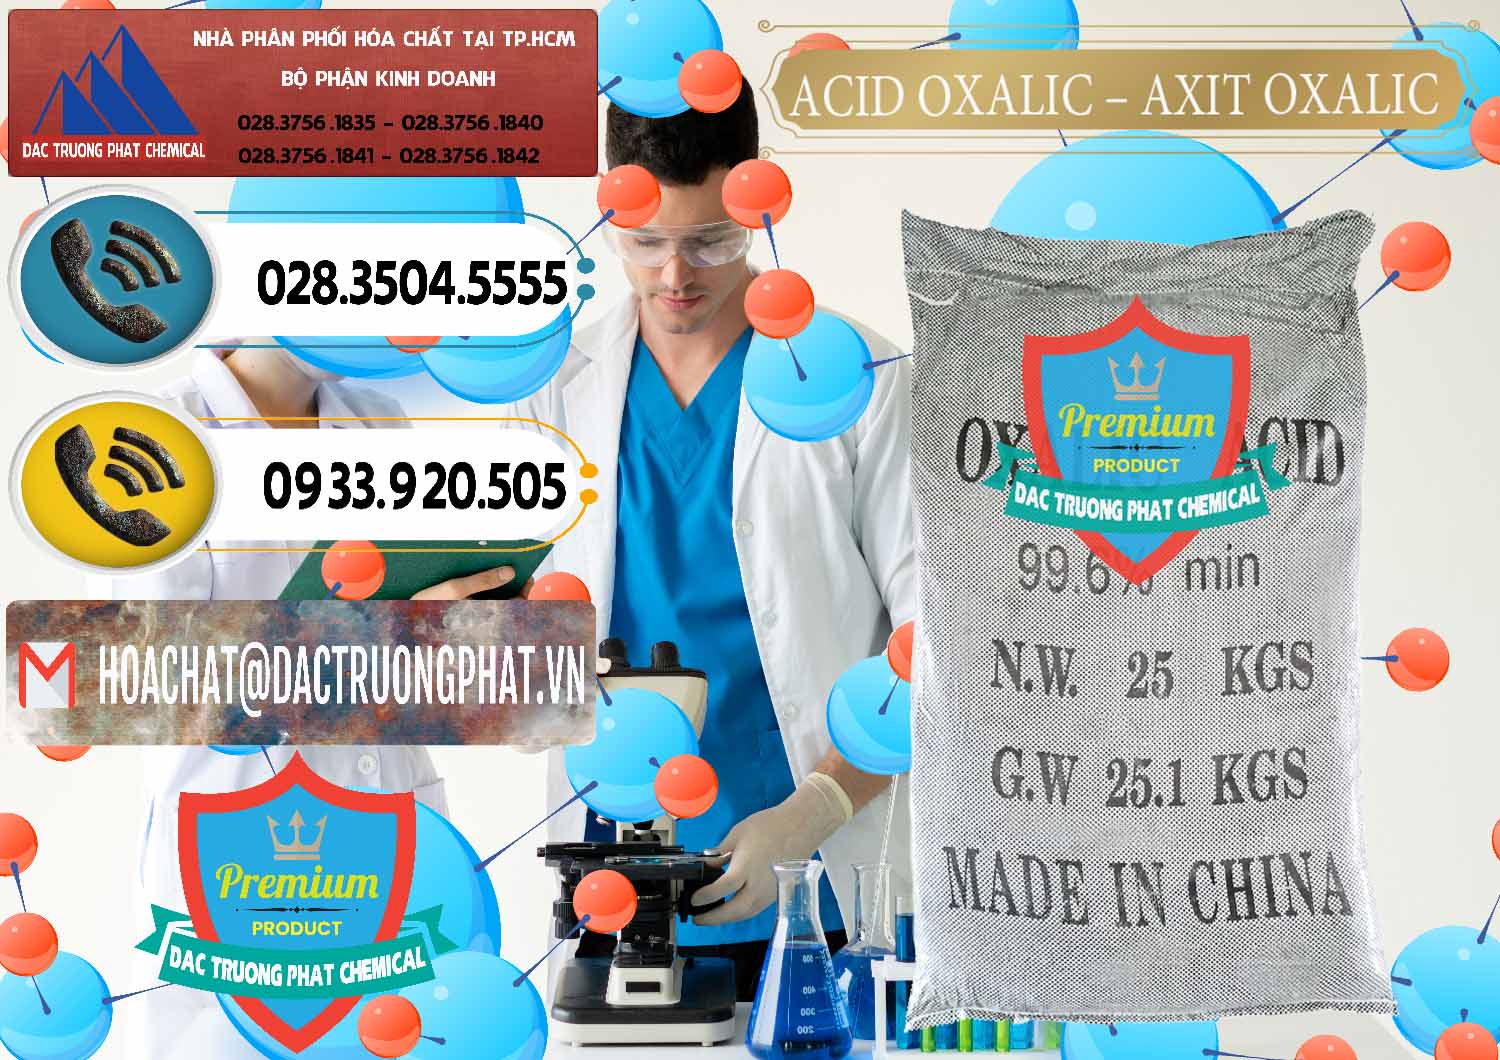 Cty chuyên phân phối và bán Acid Oxalic – Axit Oxalic 99.6% Trung Quốc China - 0014 - Cty chuyên cung cấp - nhập khẩu hóa chất tại TP.HCM - hoachatdetnhuom.vn